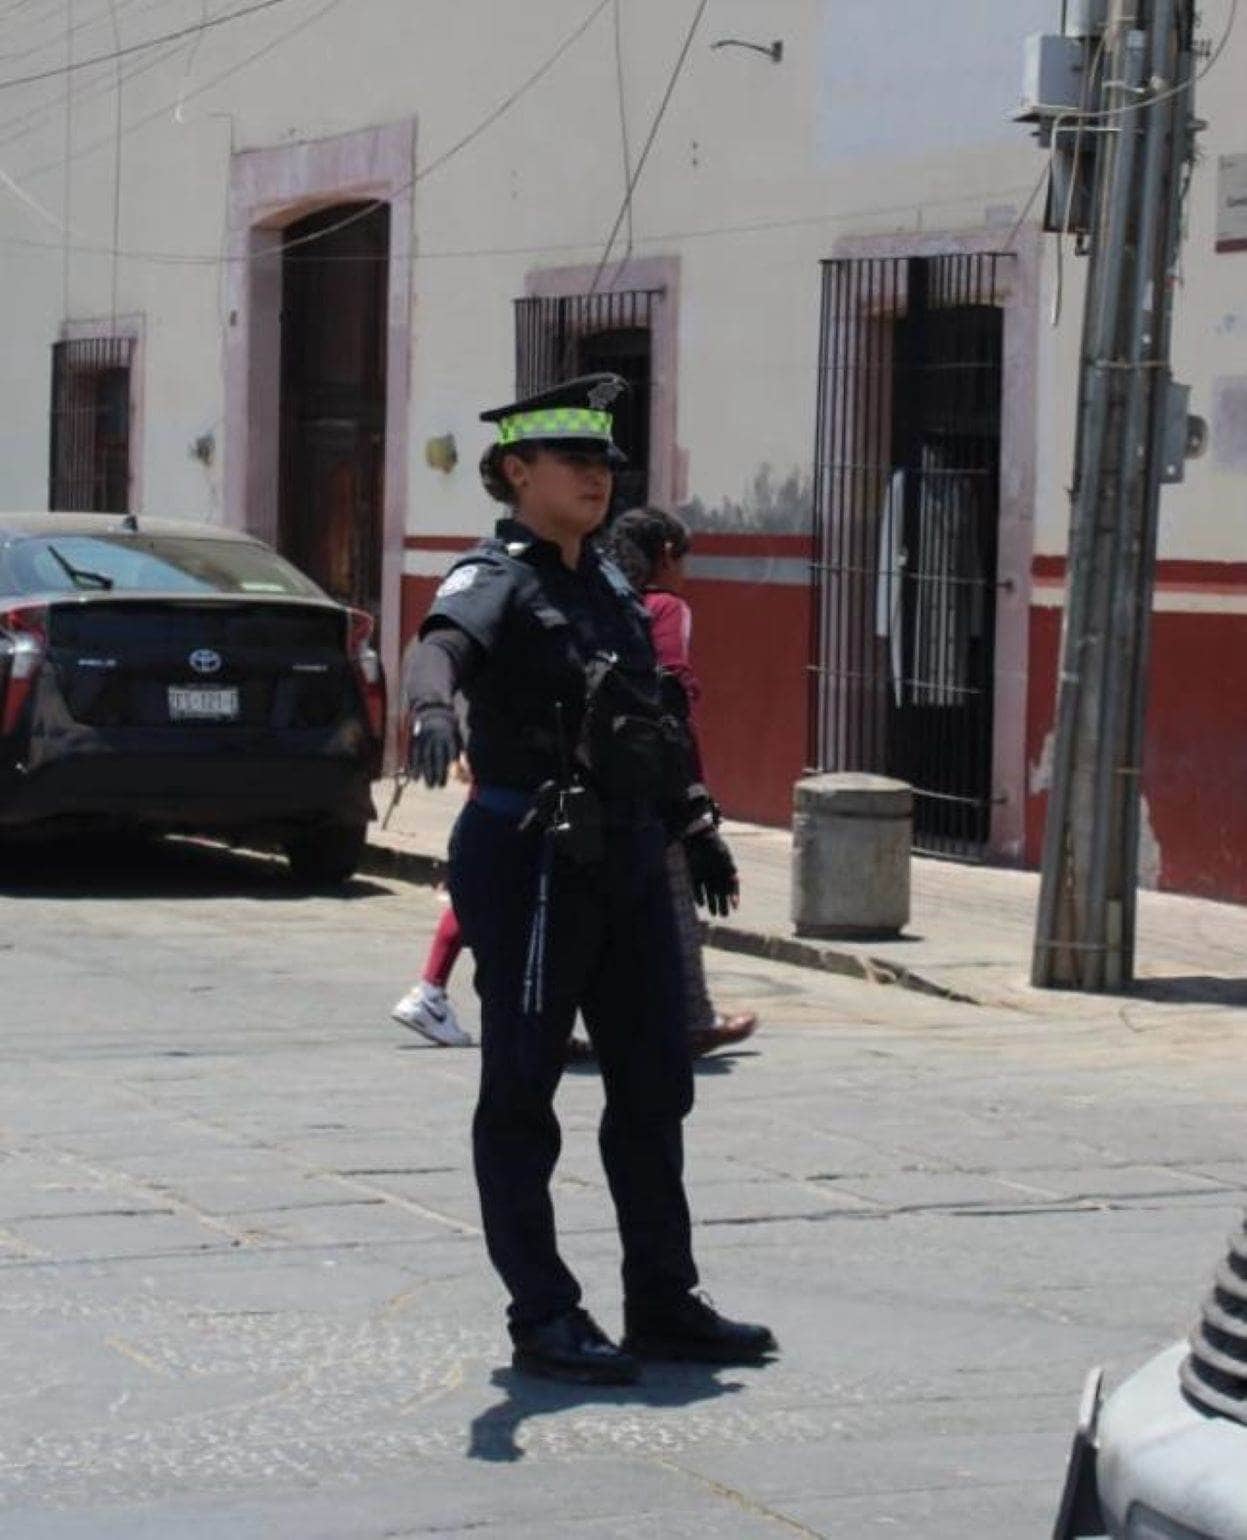 Toma precauciones por las calles cerradas que habrá este domingo 28 de abril en Guadalupe. Foto: Cortesía